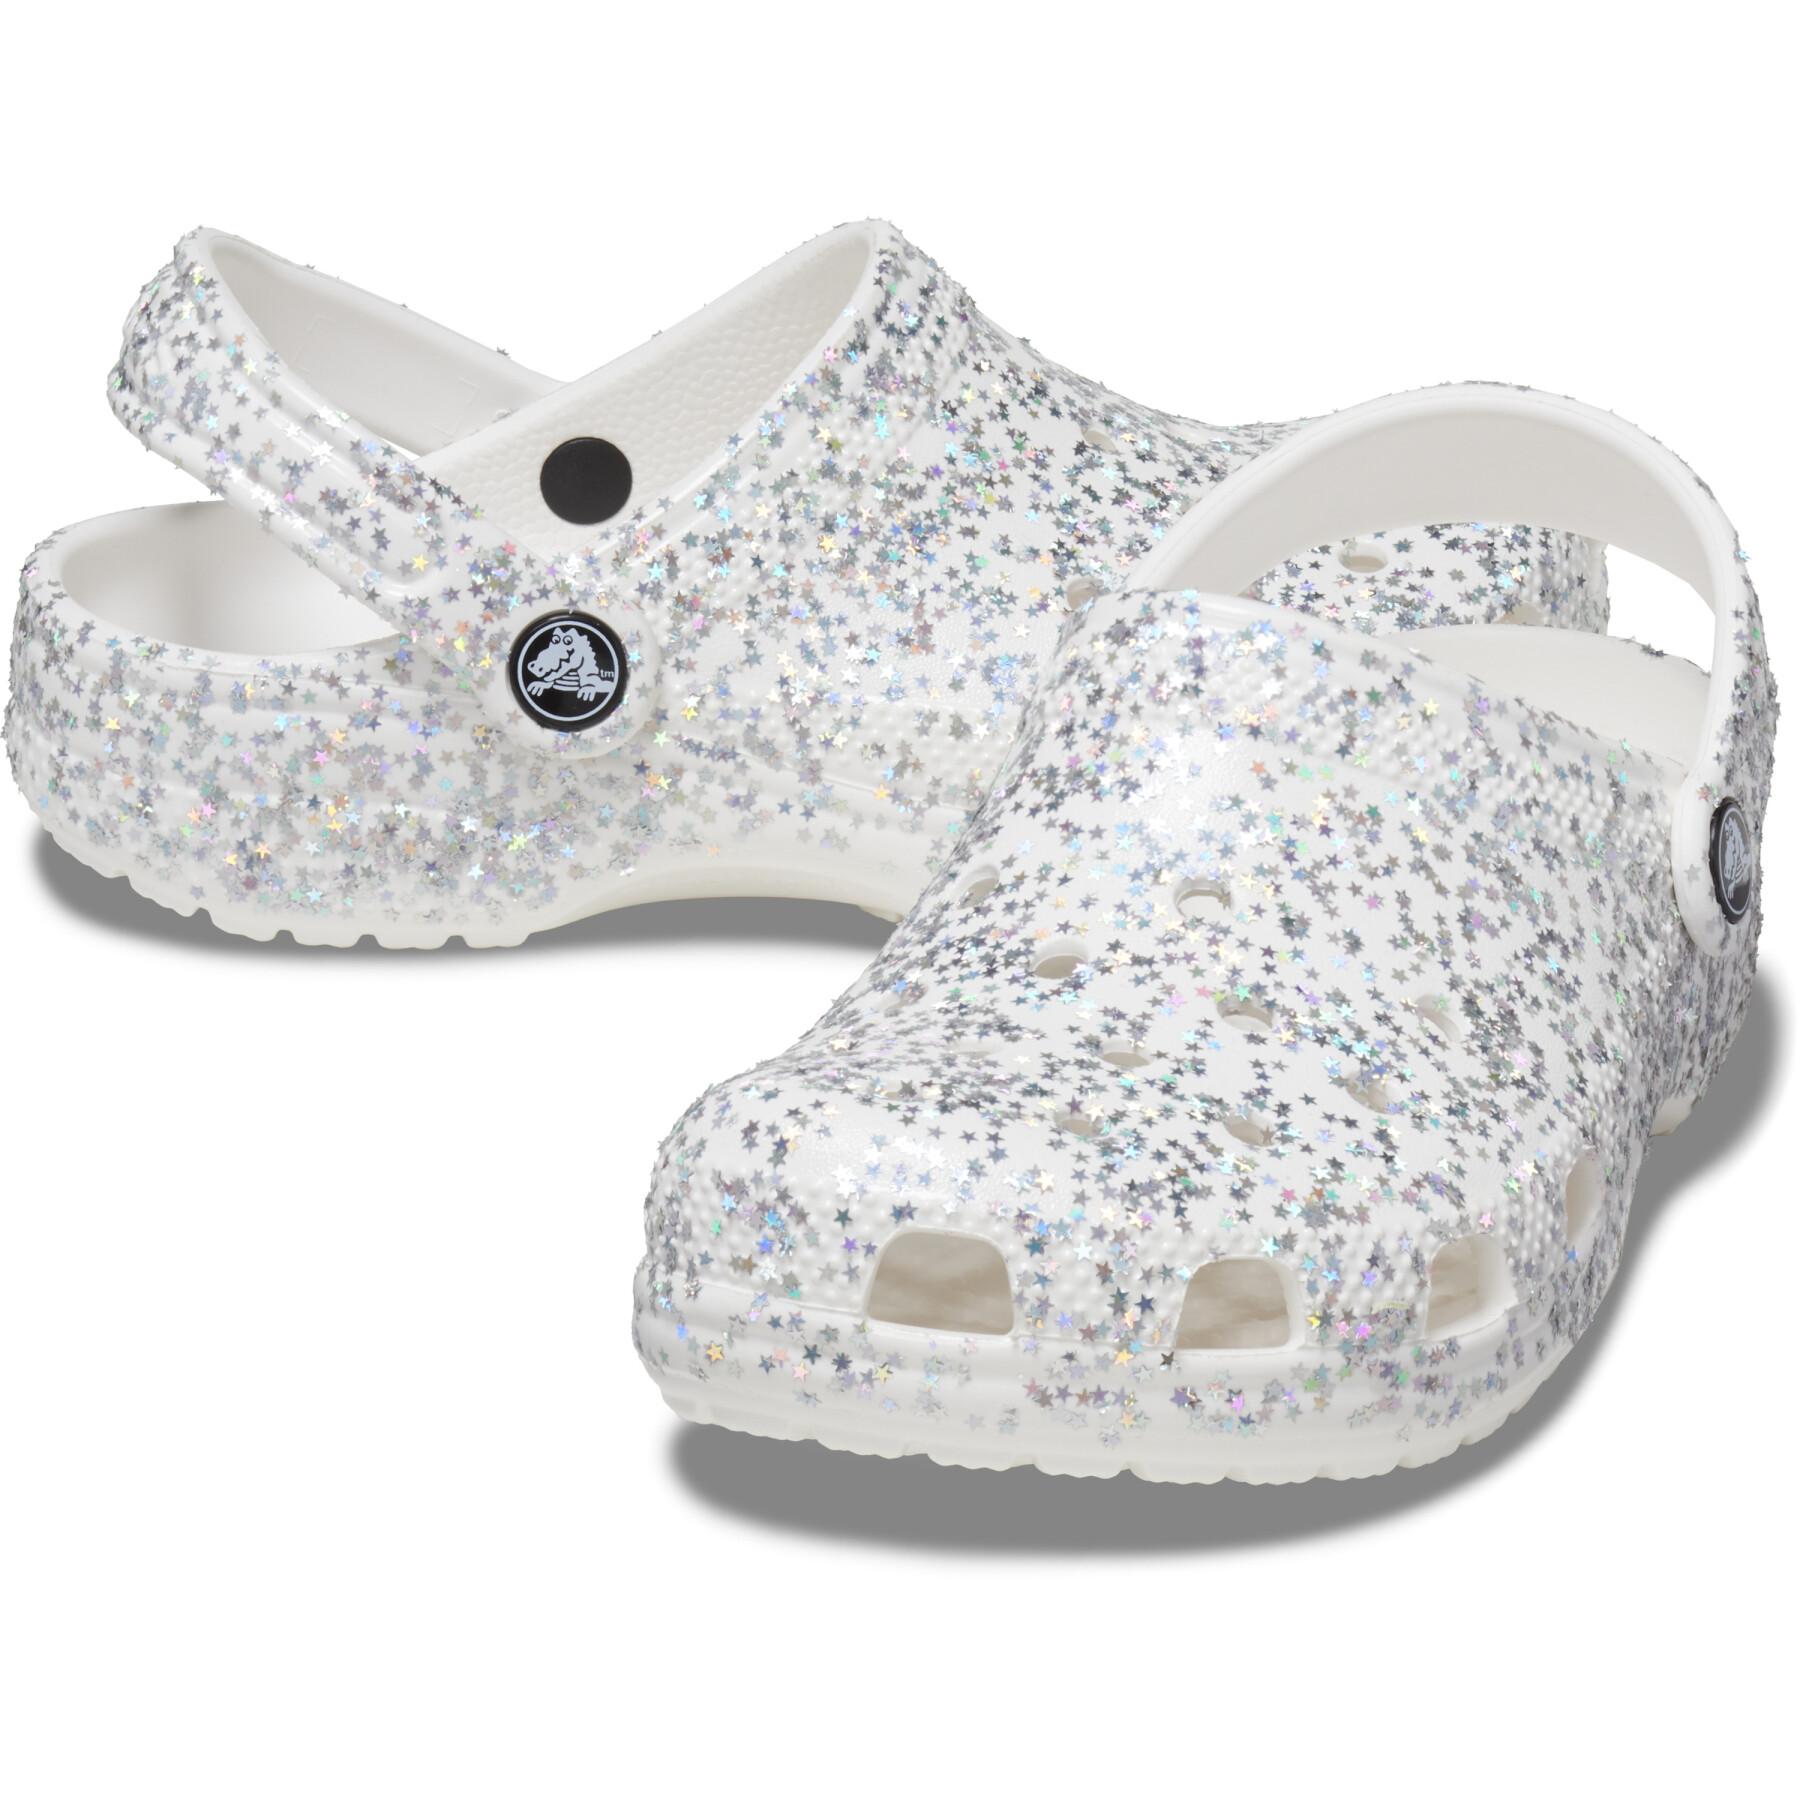 Tamancos para crianças Crocs Classic Starry Glitter